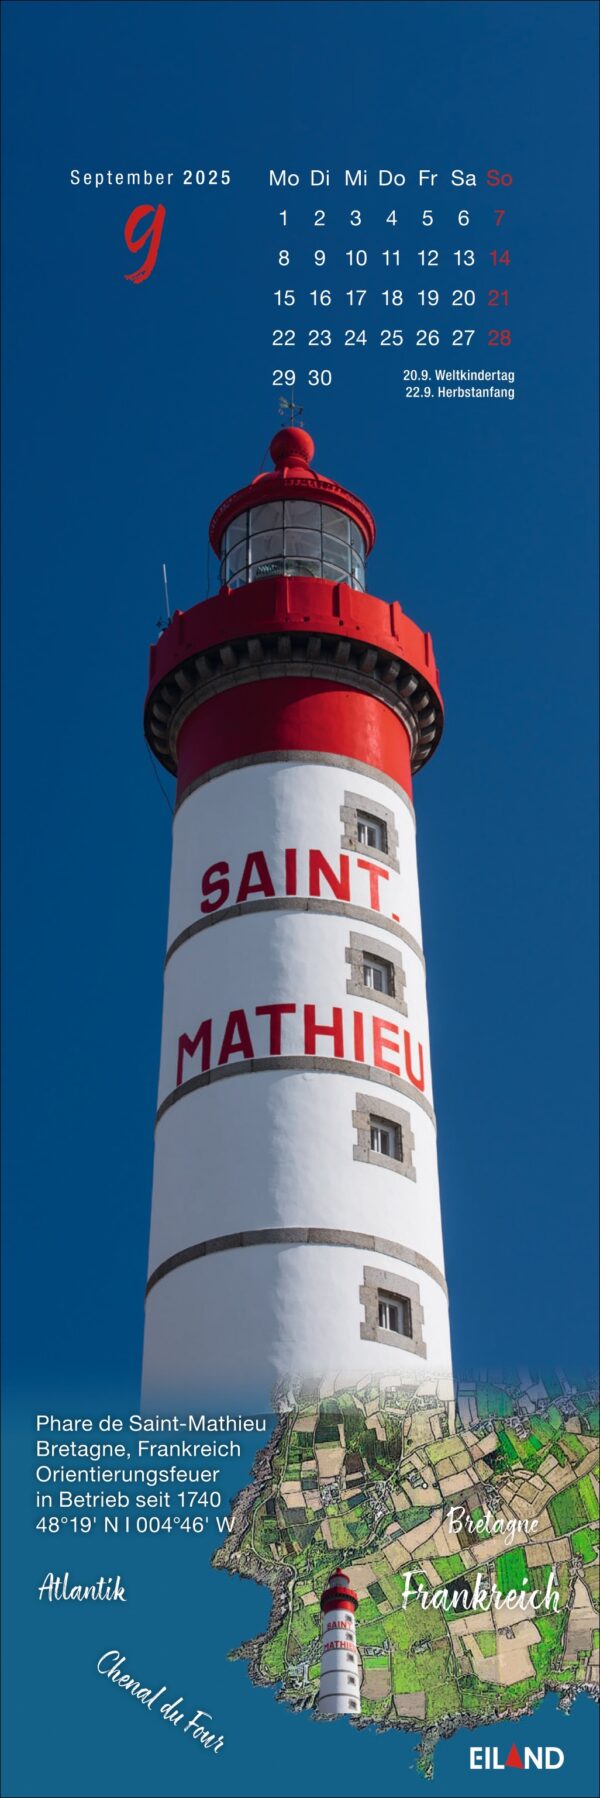 Ein vertikaler LilleEiland - Kalender 2025 für September mit dem Phare de Saint-Mathieu, einem hohen, schlanken Leuchtturm auf einer Klippe. Der Leuchtturm ist weiß mit roten Details und blickt auf eine Grasfläche